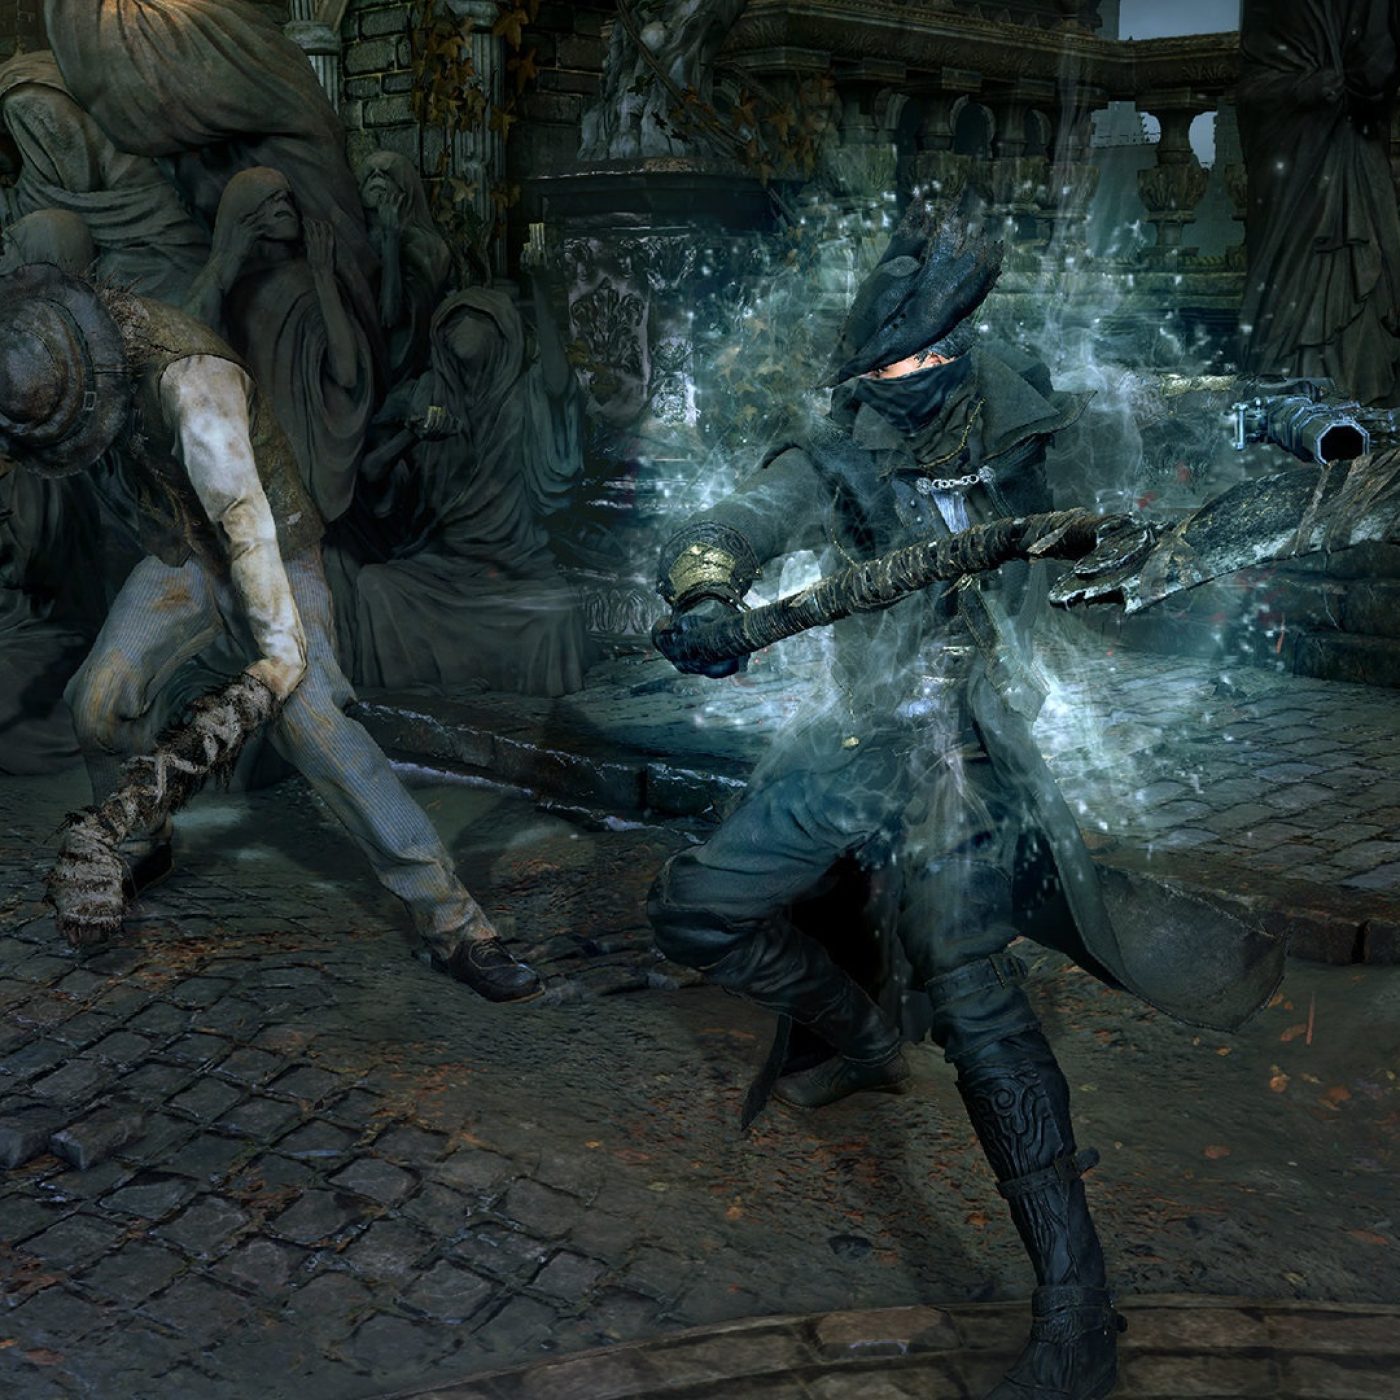 Nada de Bloodborne: Uncharted 4 pode ser o próximo jogo PlayStation no PC